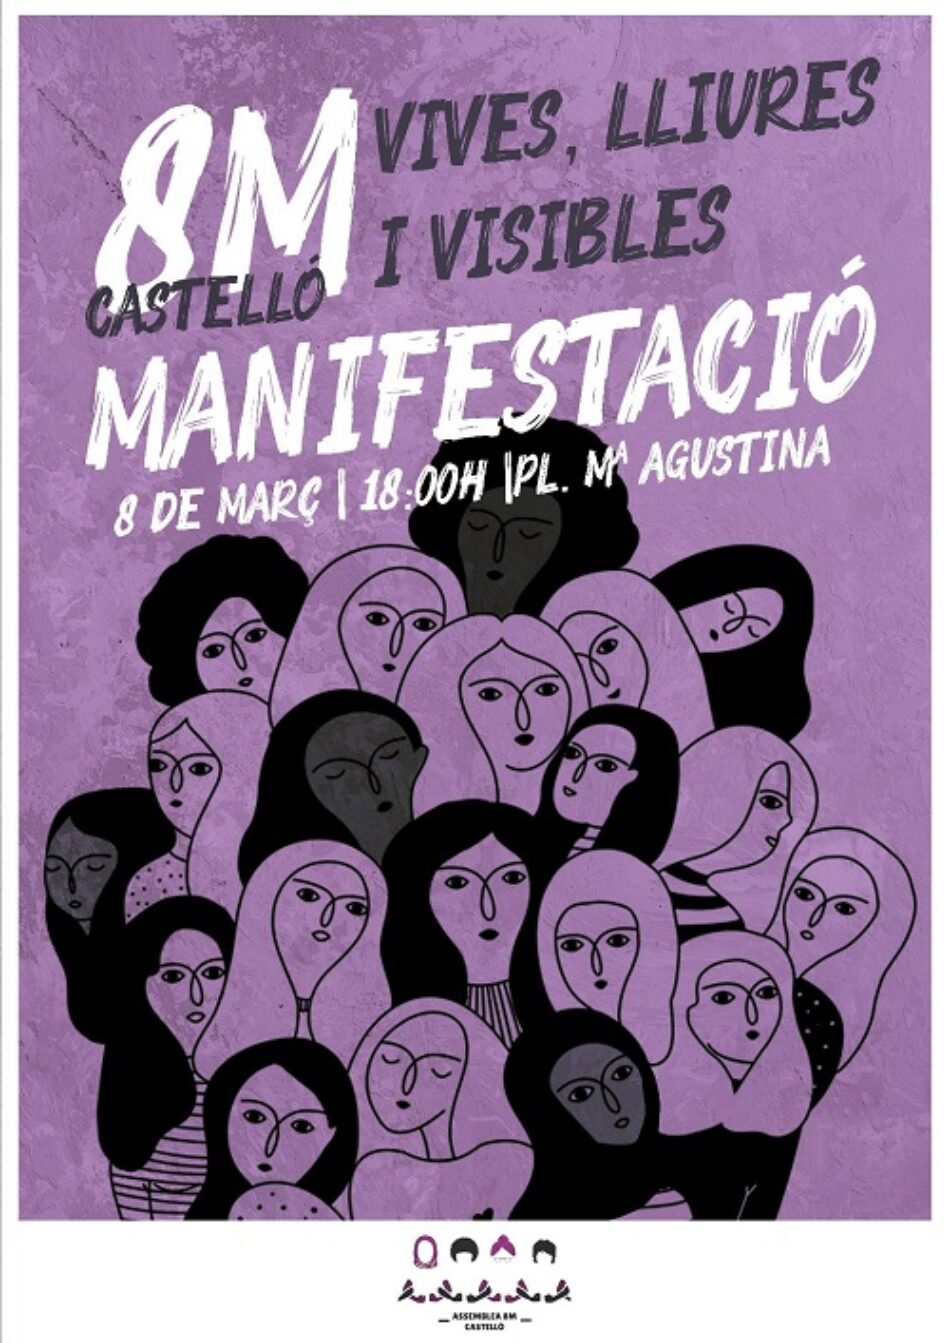 Denuncian «represión contra las trabajadoras de la Consellería de Igualdad de Castellón, que realizaron la huelga el 8M en 2018»